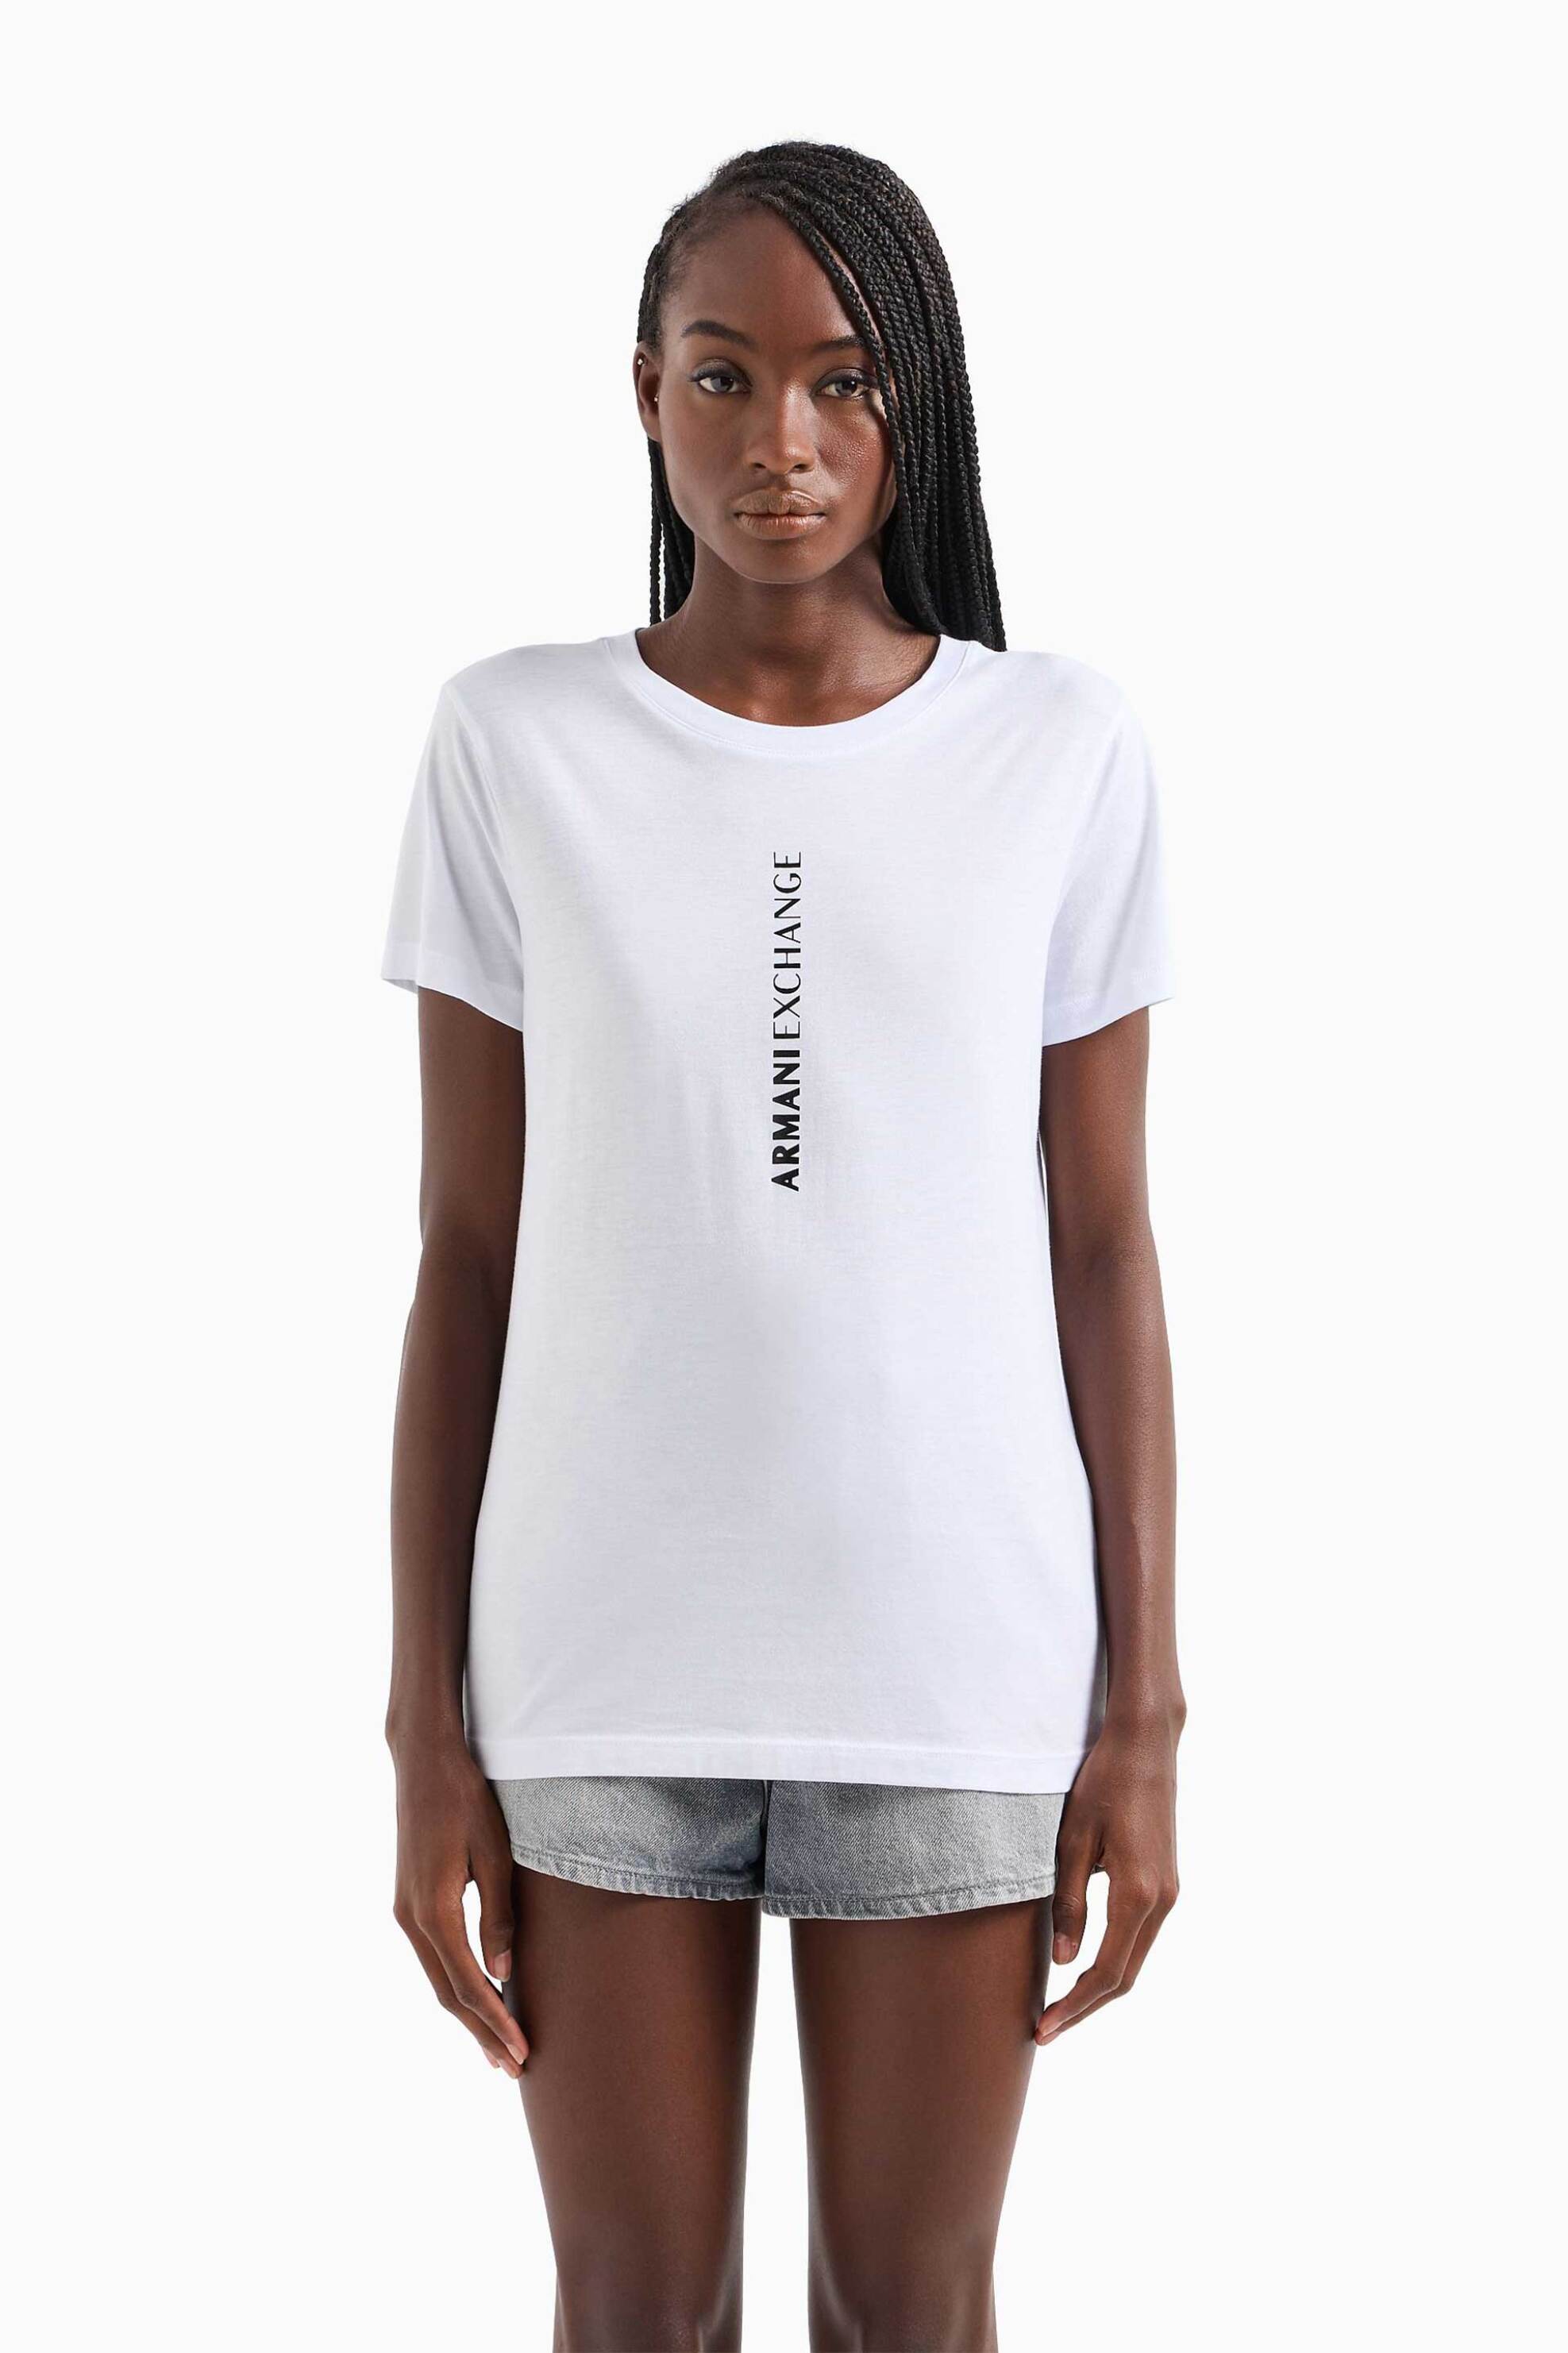 Γυναικεία Ρούχα & Αξεσουάρ > Γυναικεία Ρούχα > Γυναικεία Τοπ > Γυναικεία T-Shirts Armani Exchange γυναικείο βαμβακερό T-shirt μονόχρωμο με κάθετο contrast logo print - 3DYT02YJ16Z Λευκό